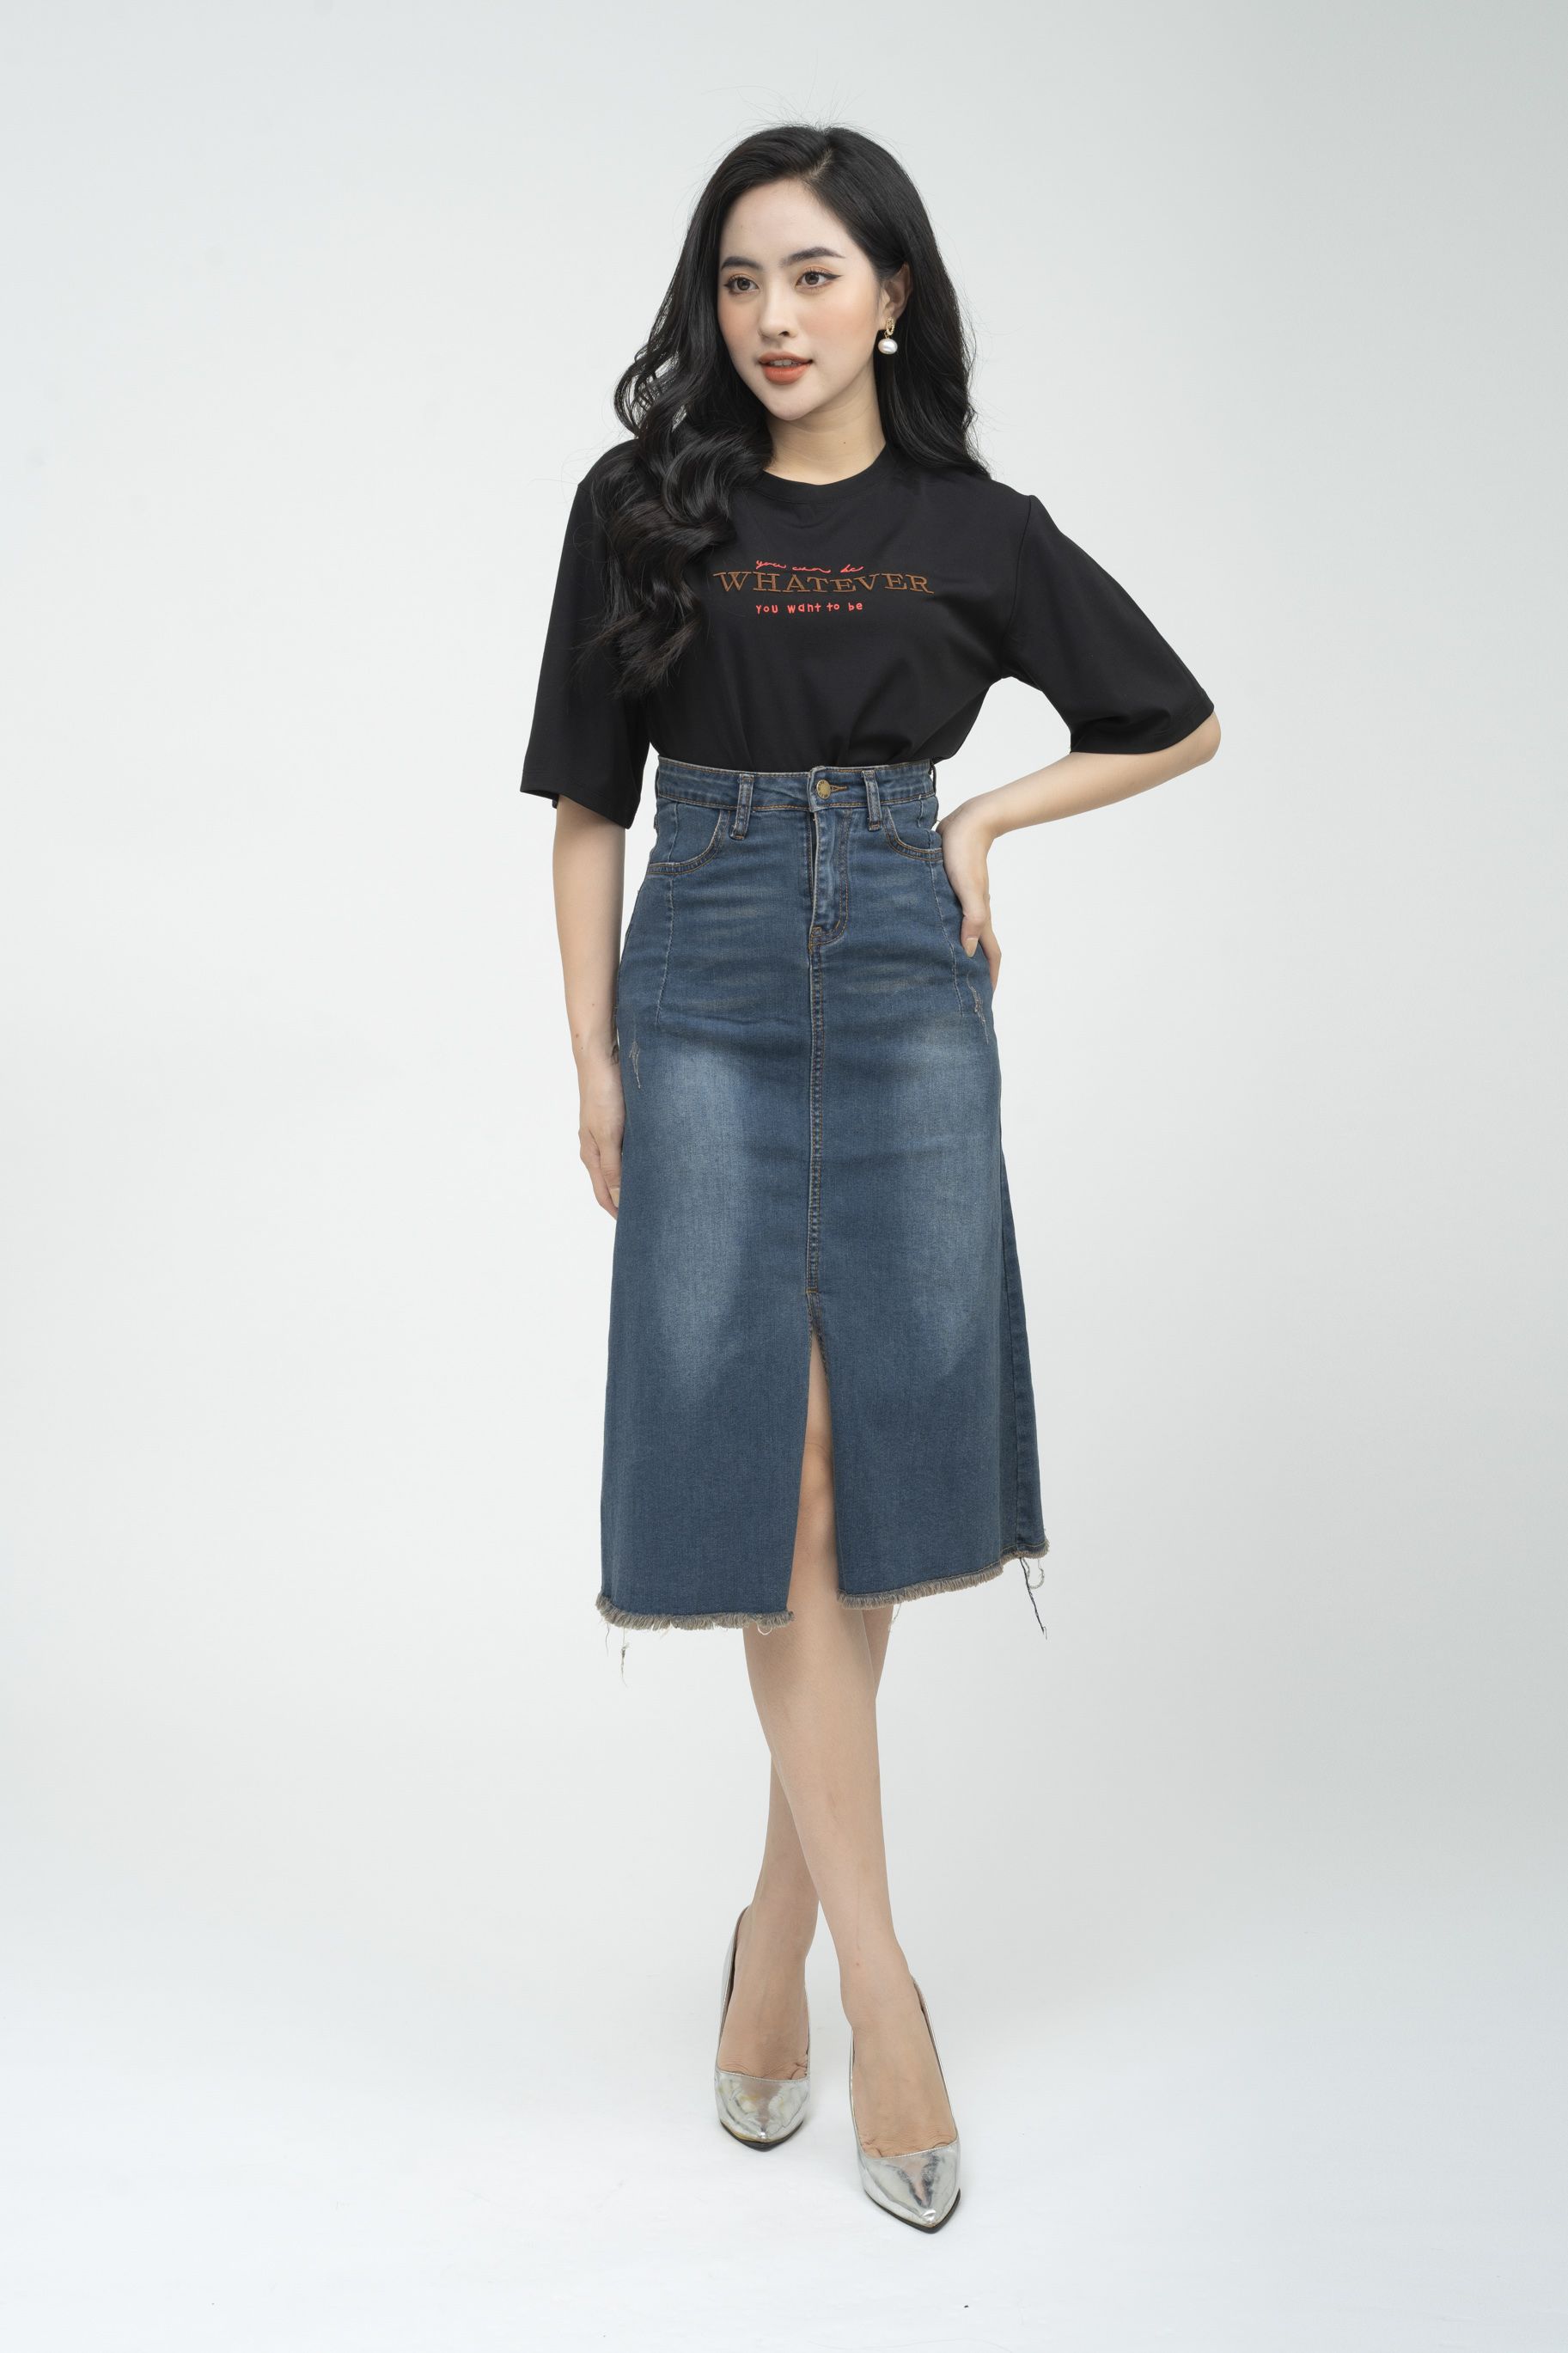 D1820 : Set bộ công sở Hàn Quốc áo tay phồng + Chân váy xẻ trước -  yishop.com.vn